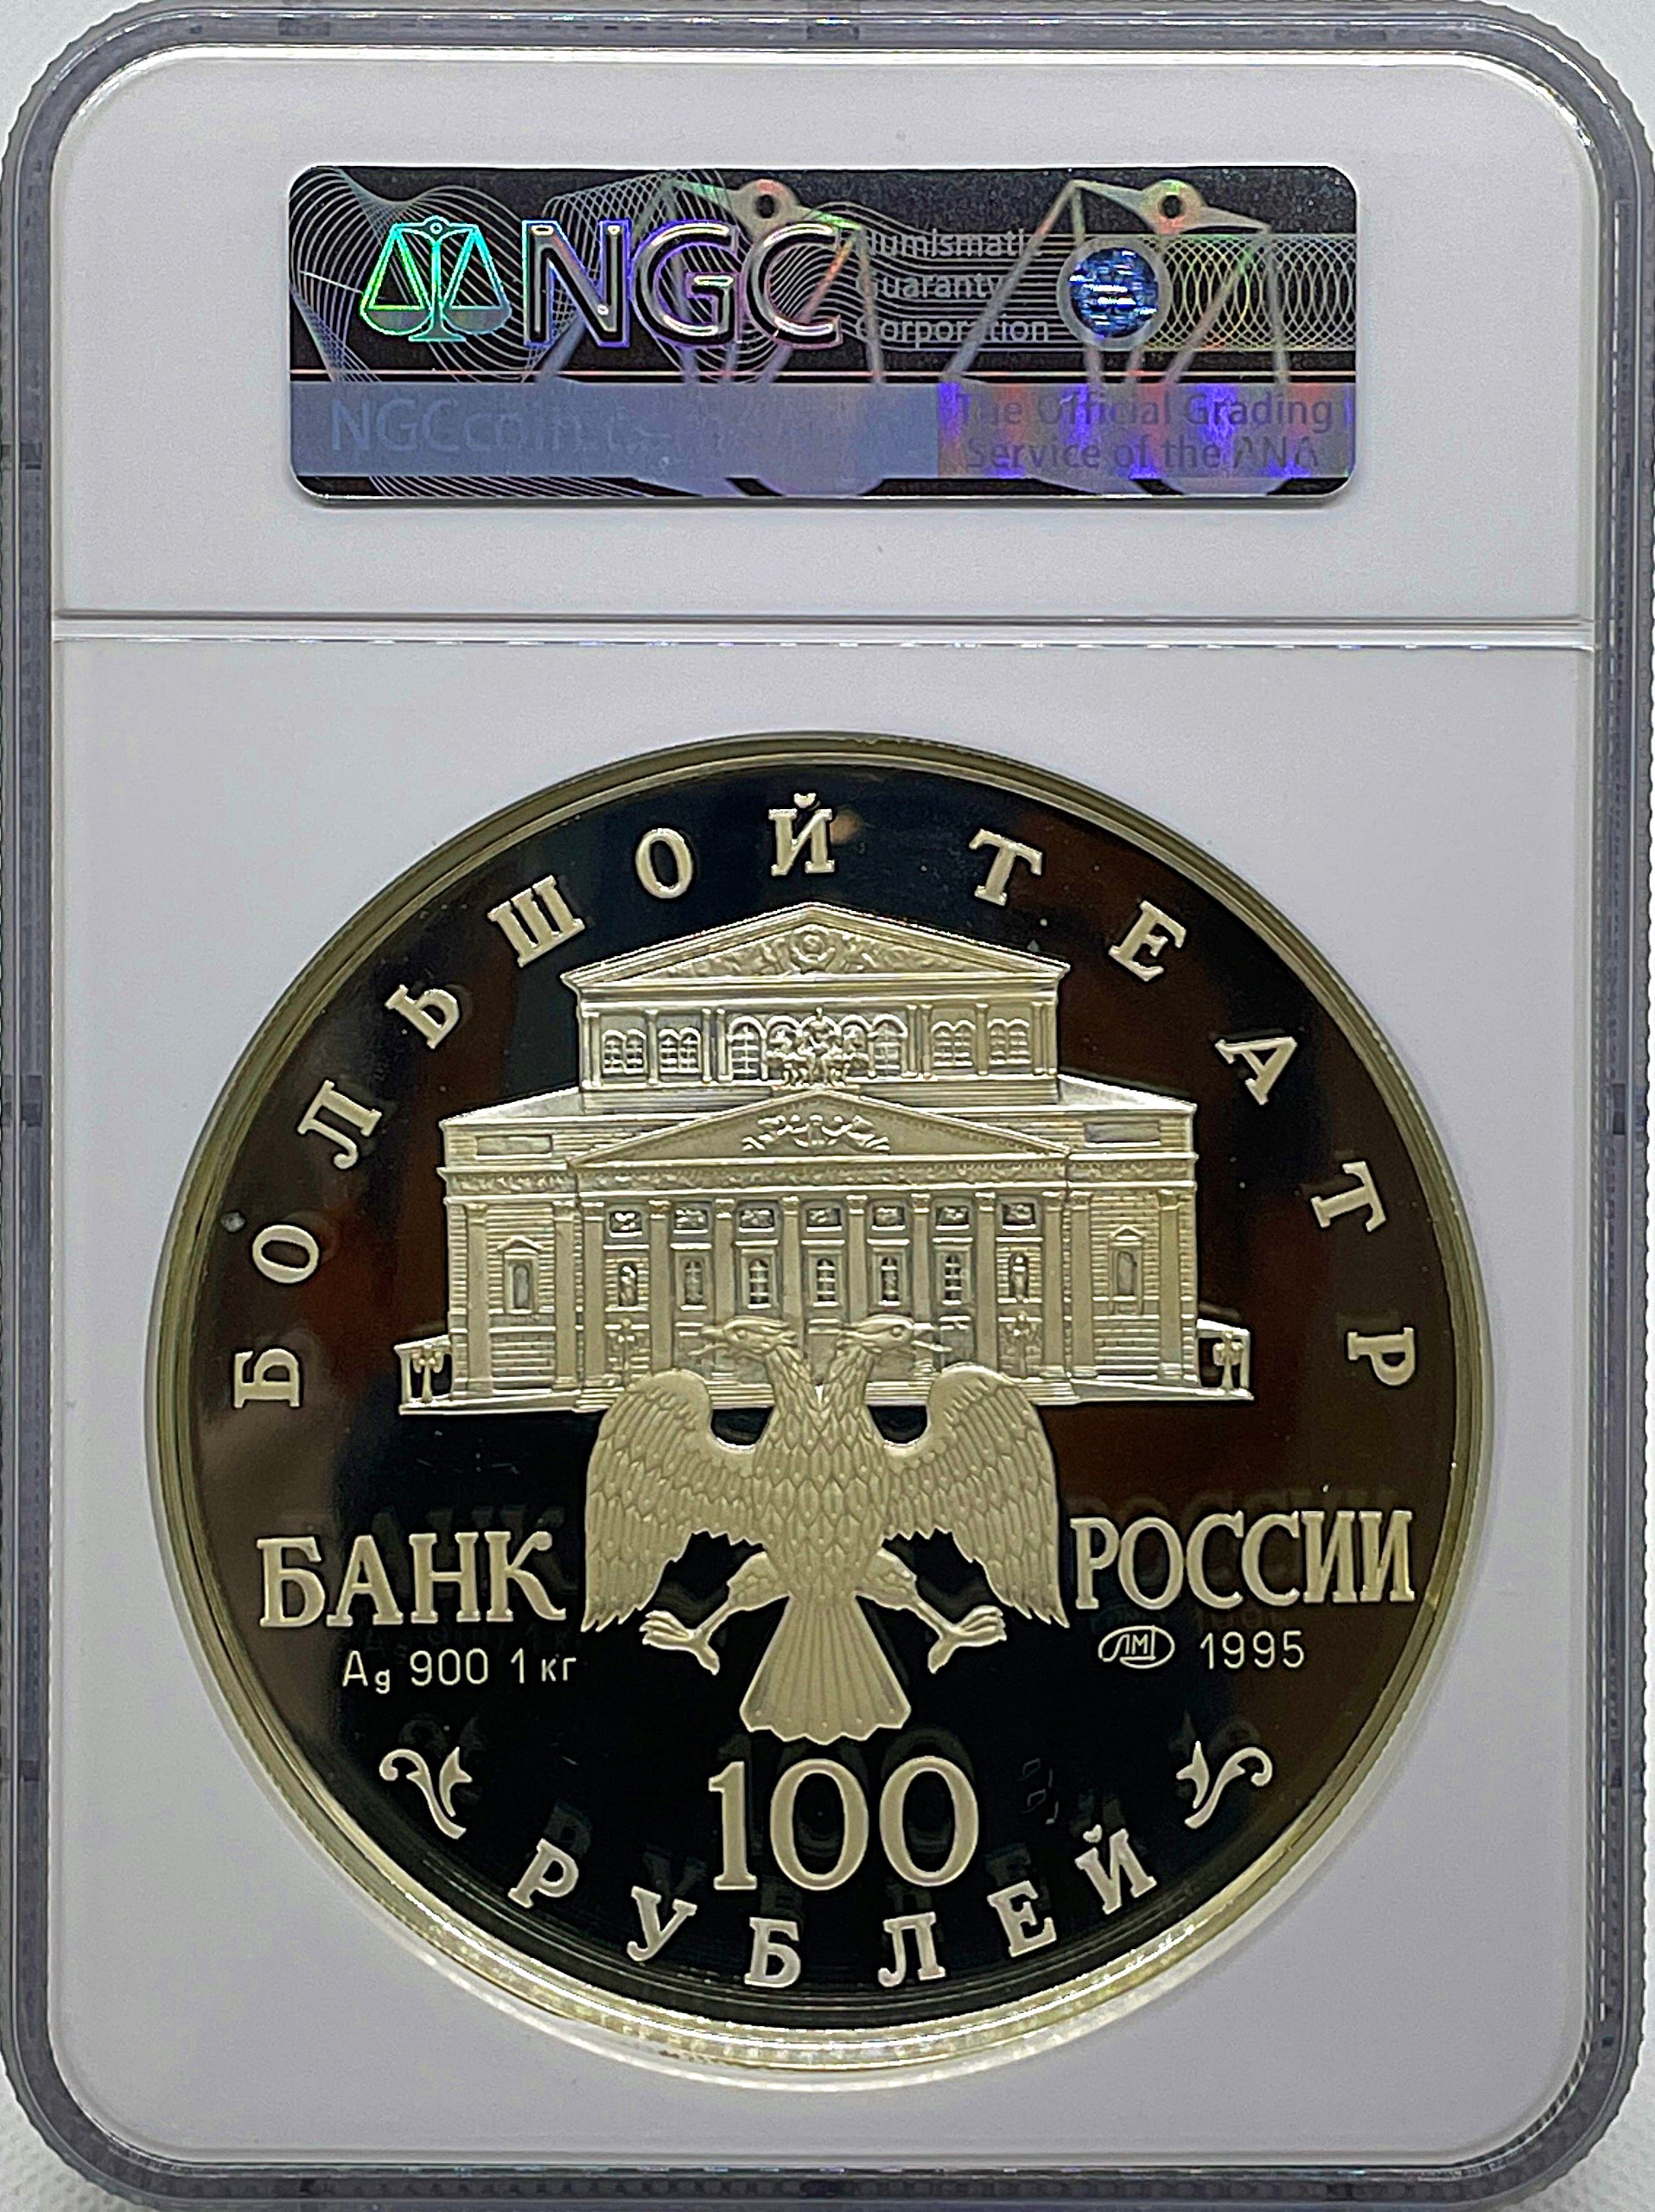 1995年 ロシア バレリーナ 100ルーブル 1キロ銀貨 NGC鑑定 PF69UC 眠れる森の美女 – PROOF COINS